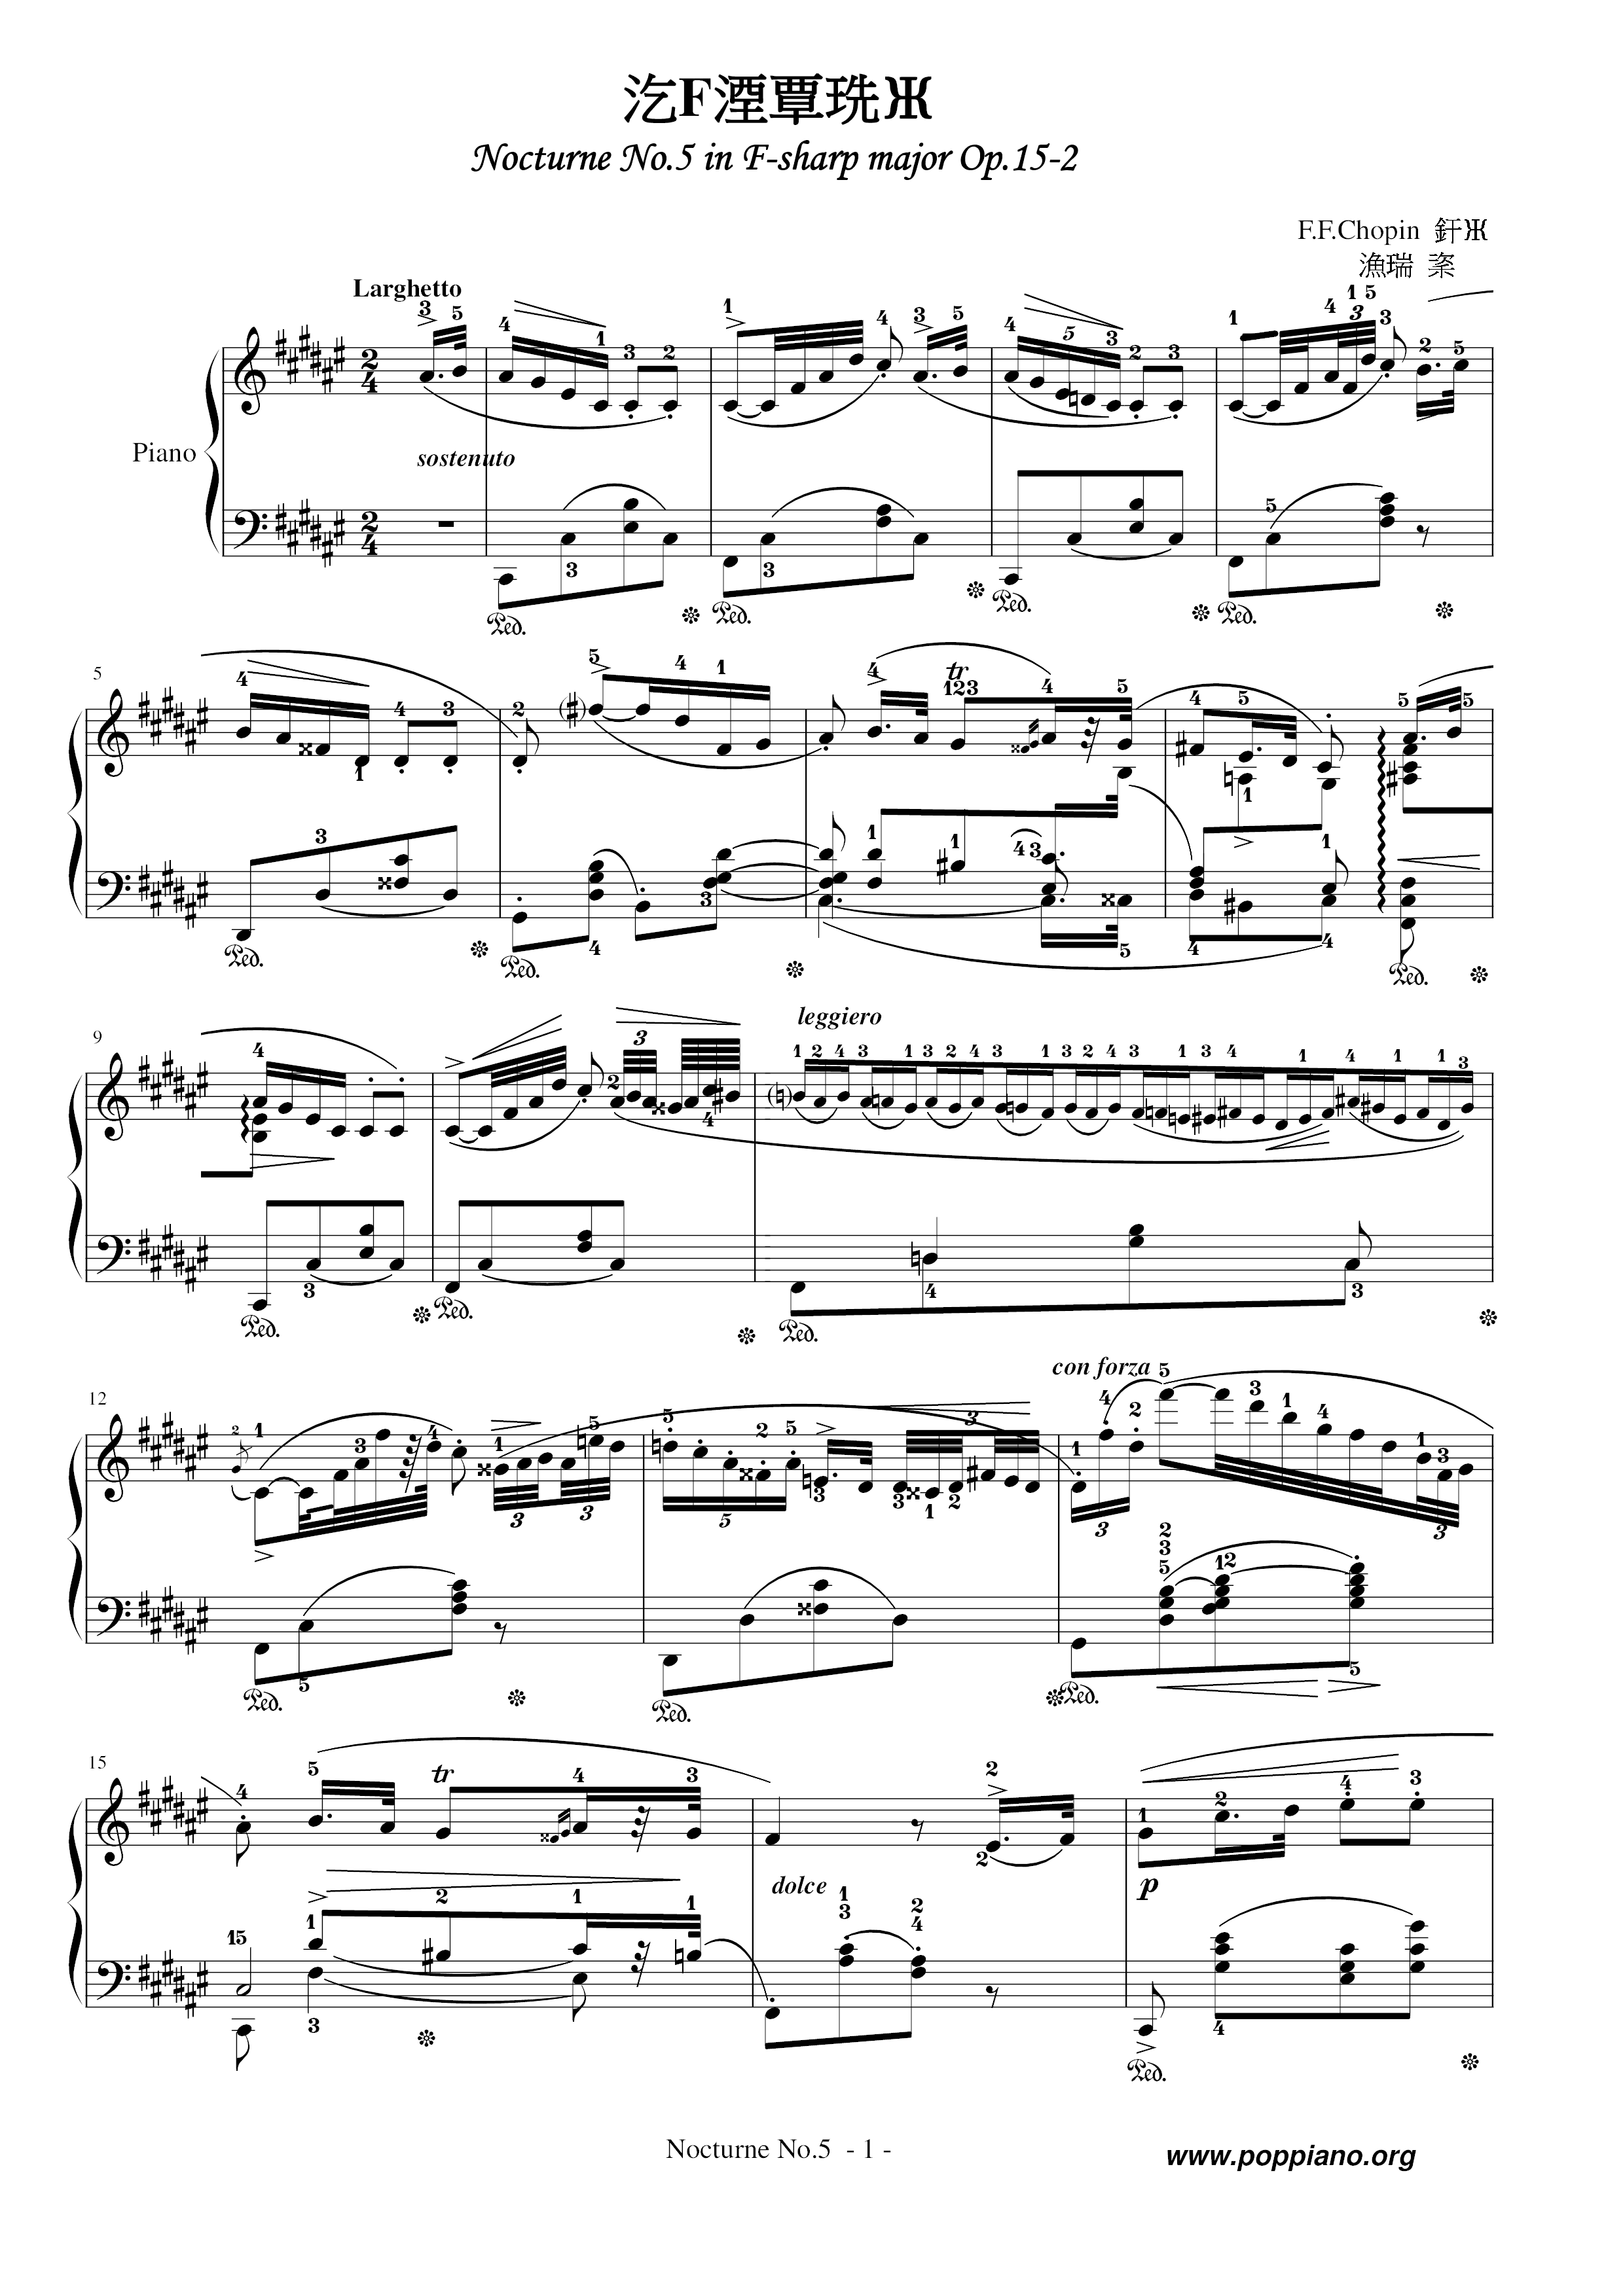 Nocturne No. 05 Score